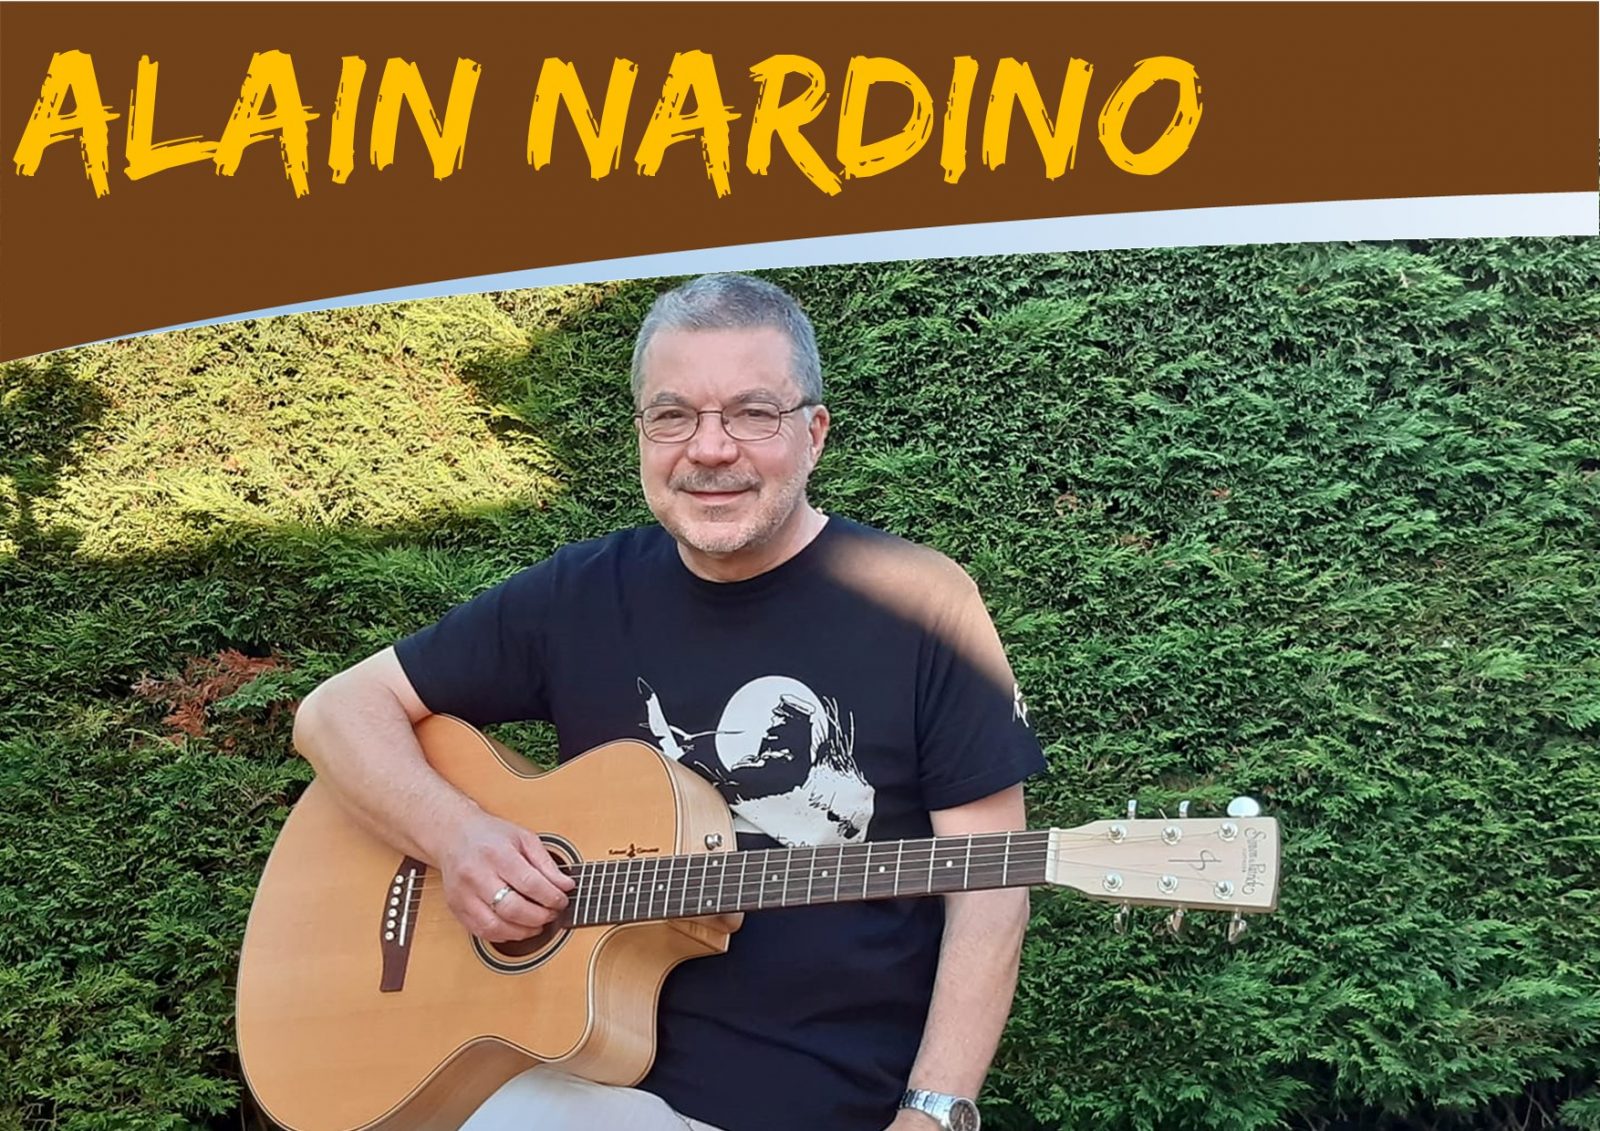 Concert : Alain Nardino chante Renaud (70/80)